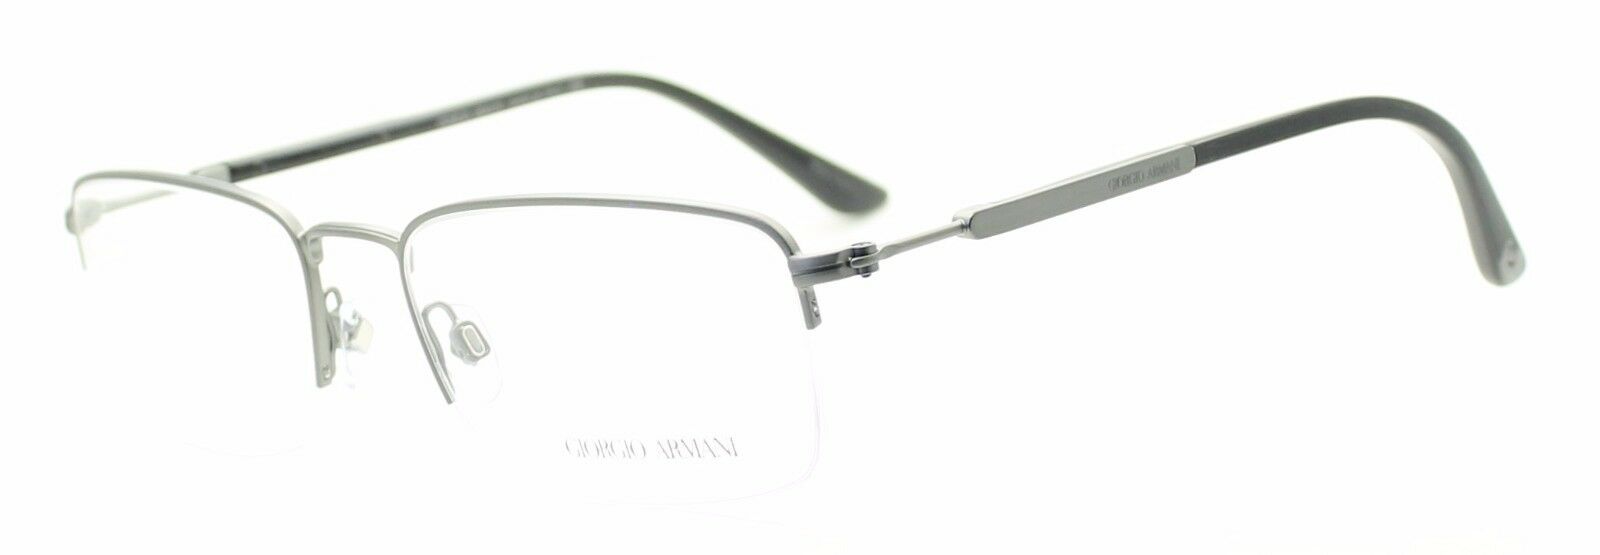 GIORGIO ARMANI AR 5025 3032 Eyewear FRAMES Eyeglasses RX Optical Glasses -  ITALY - GGV Eyewear